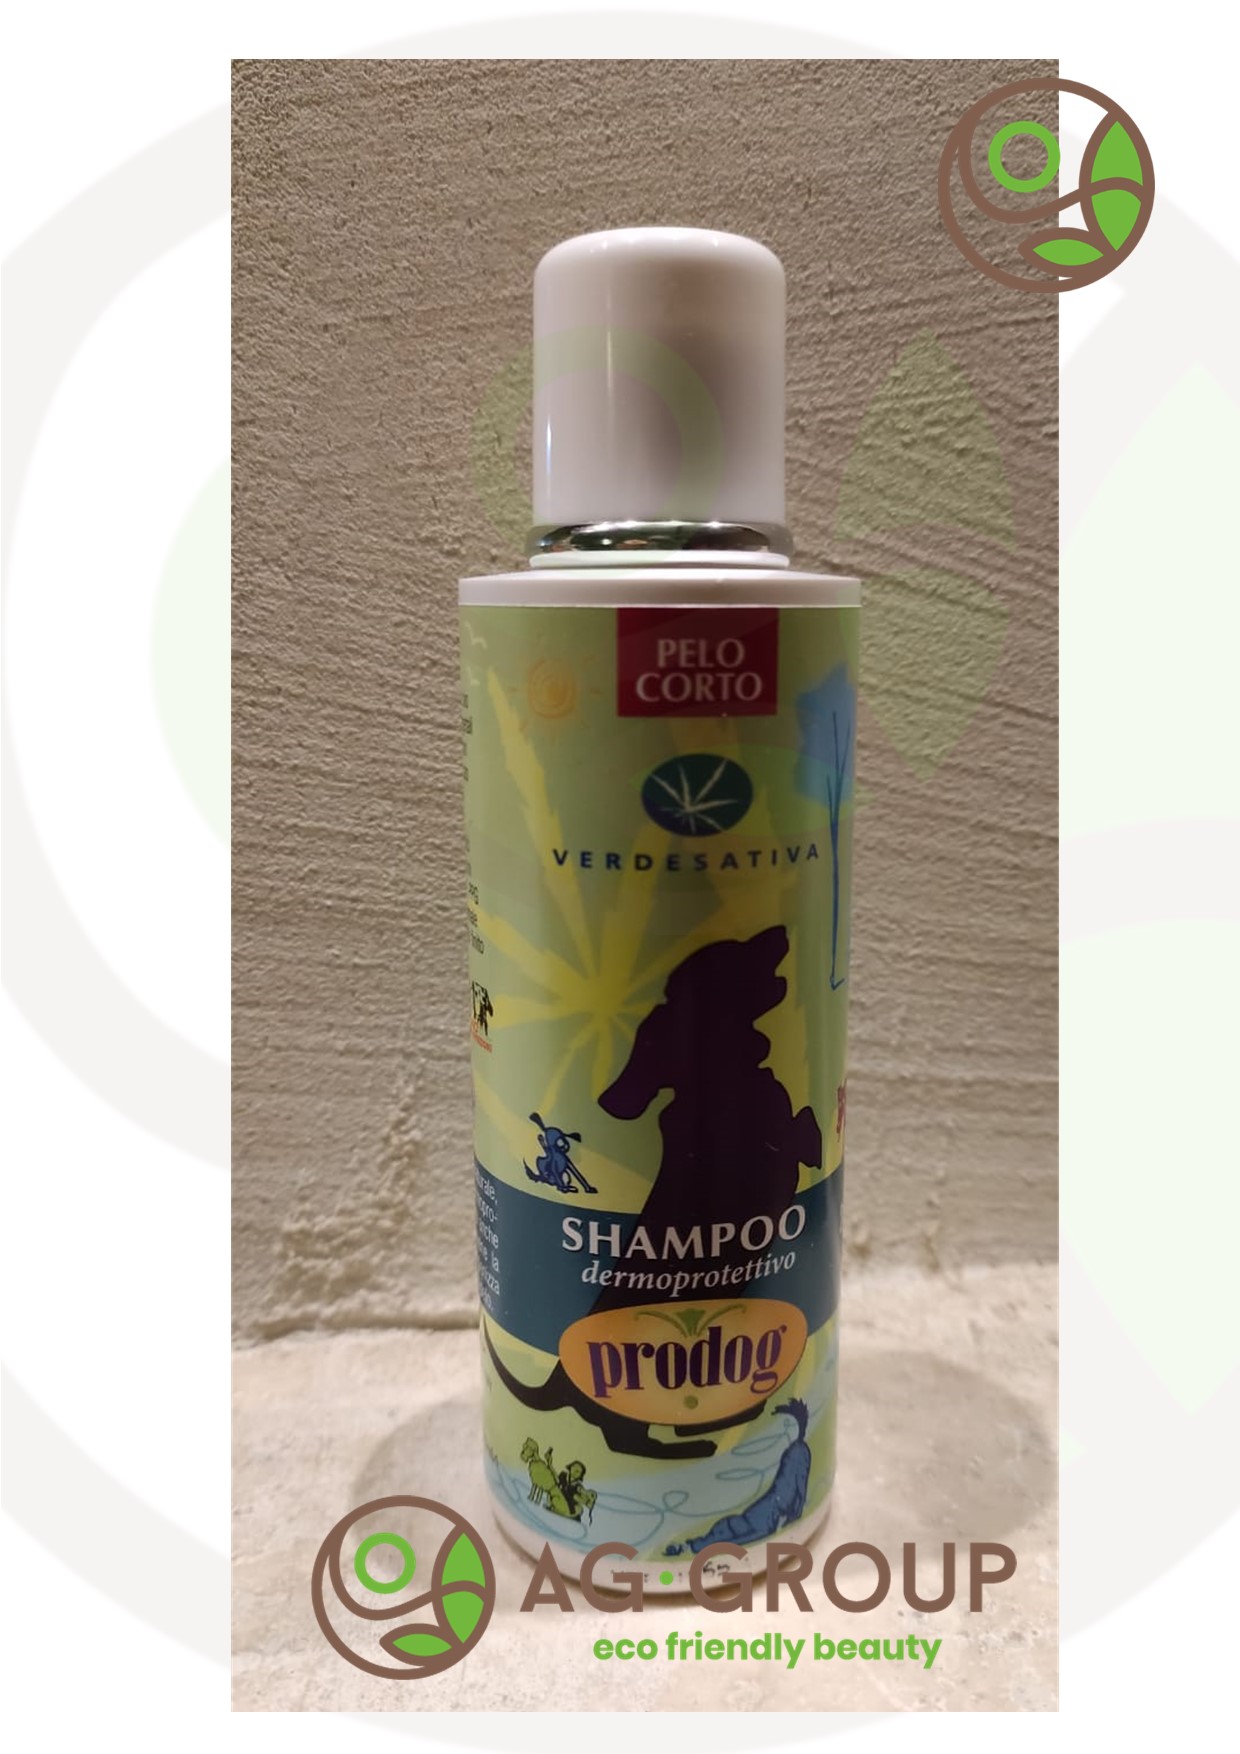 Featured image for “Shampoo dermoprotettiva pet - pelo corto”